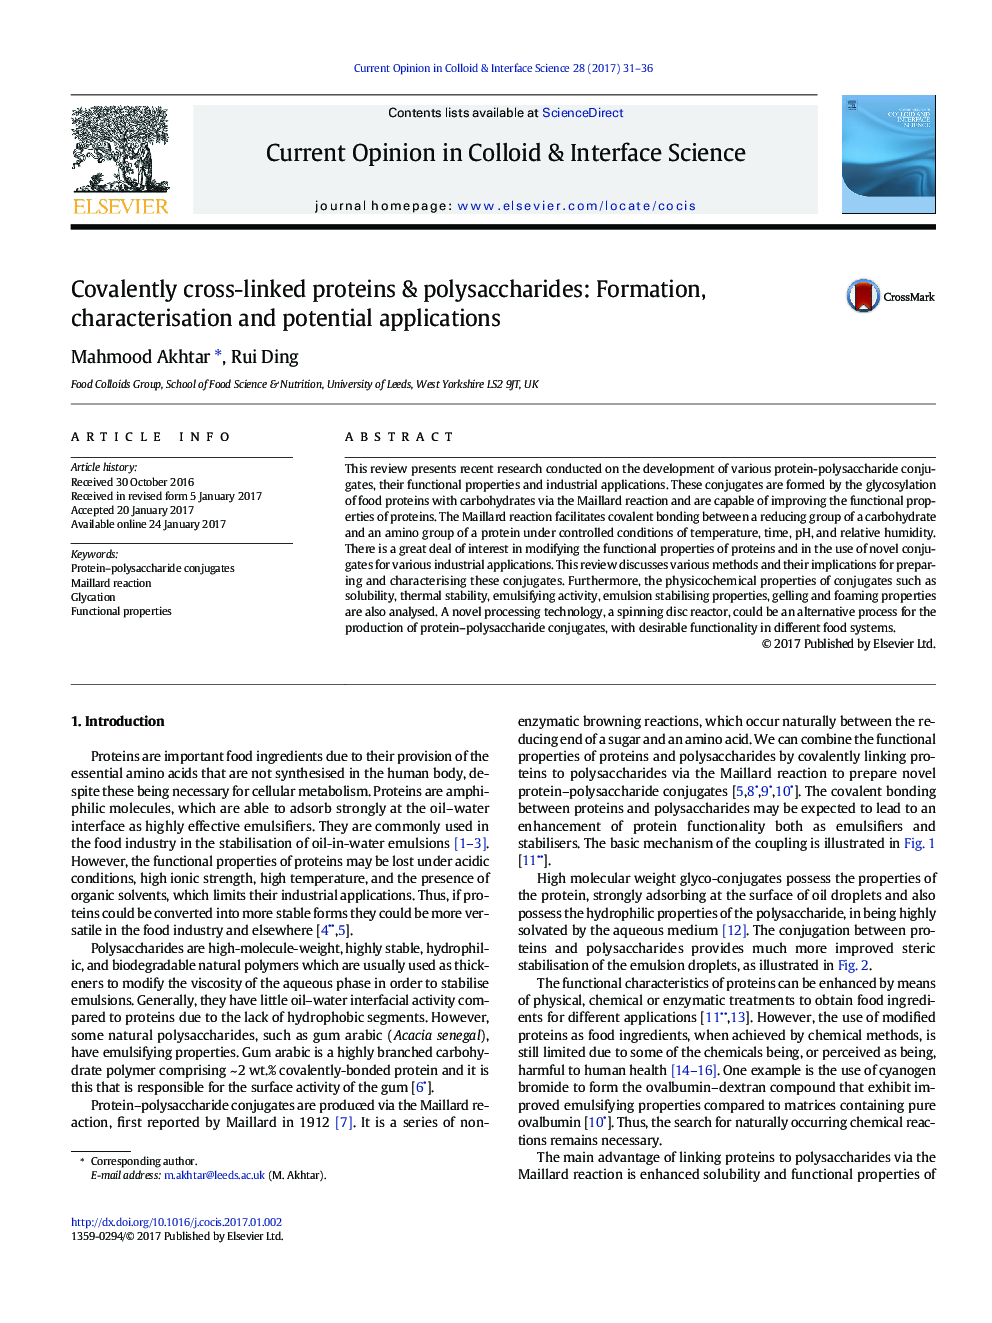 پروتئین ها و پلی ساکارید های کوانتومی متقاطع: تشکیل، خصوصیات و کاربردهای بالقوه 